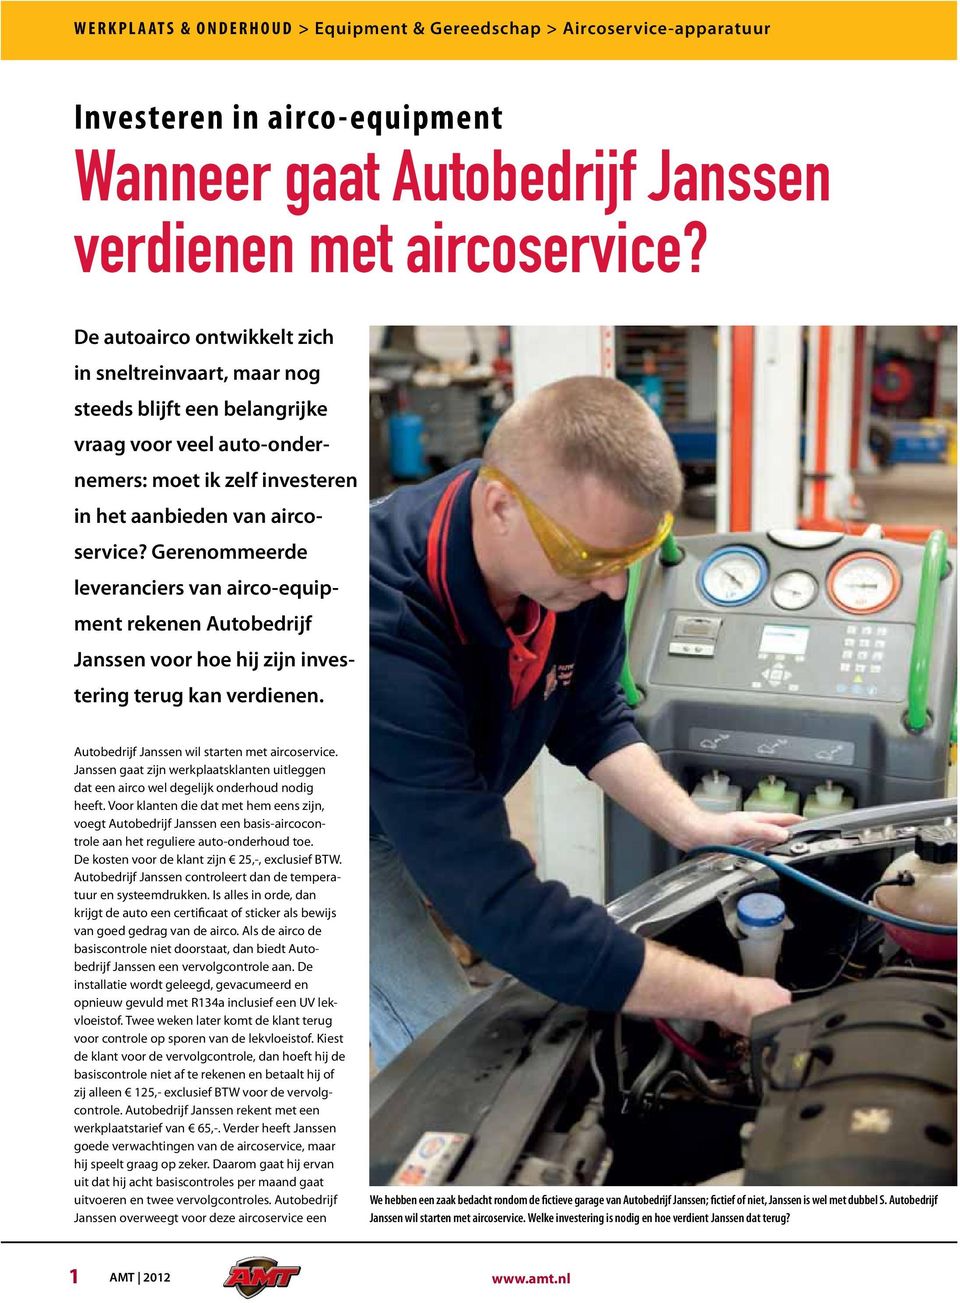 Gerenommeerde leveranciers van airco-equipment rekenen Autobedrijf Janssen voor hoe hij zijn investering terug kan verdienen. Autobedrijf Janssen wil starten met aircoservice.